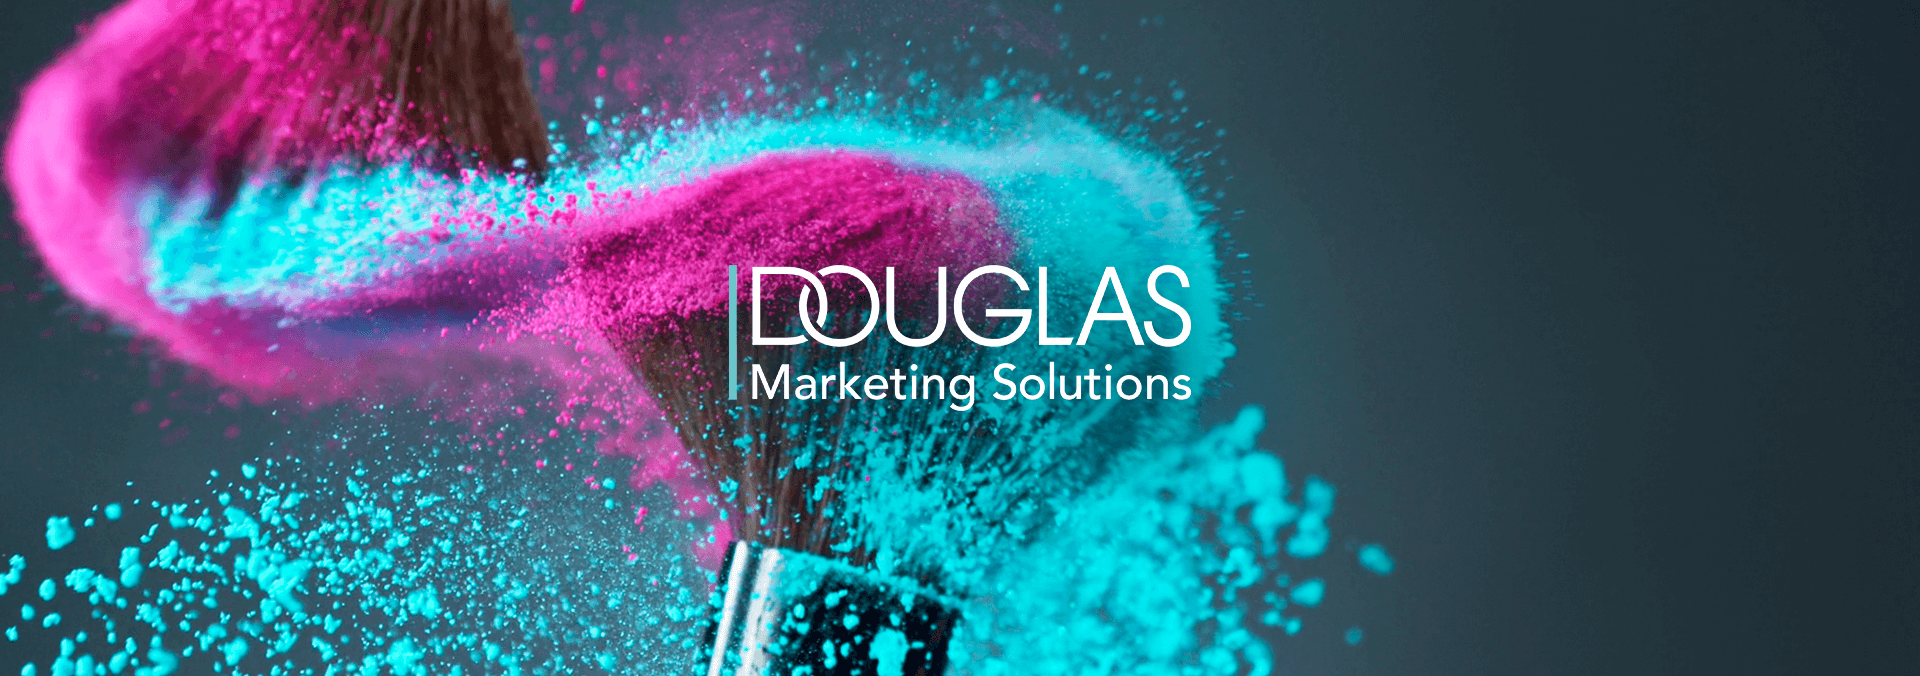 Marketing Kampagne für Douglas Header